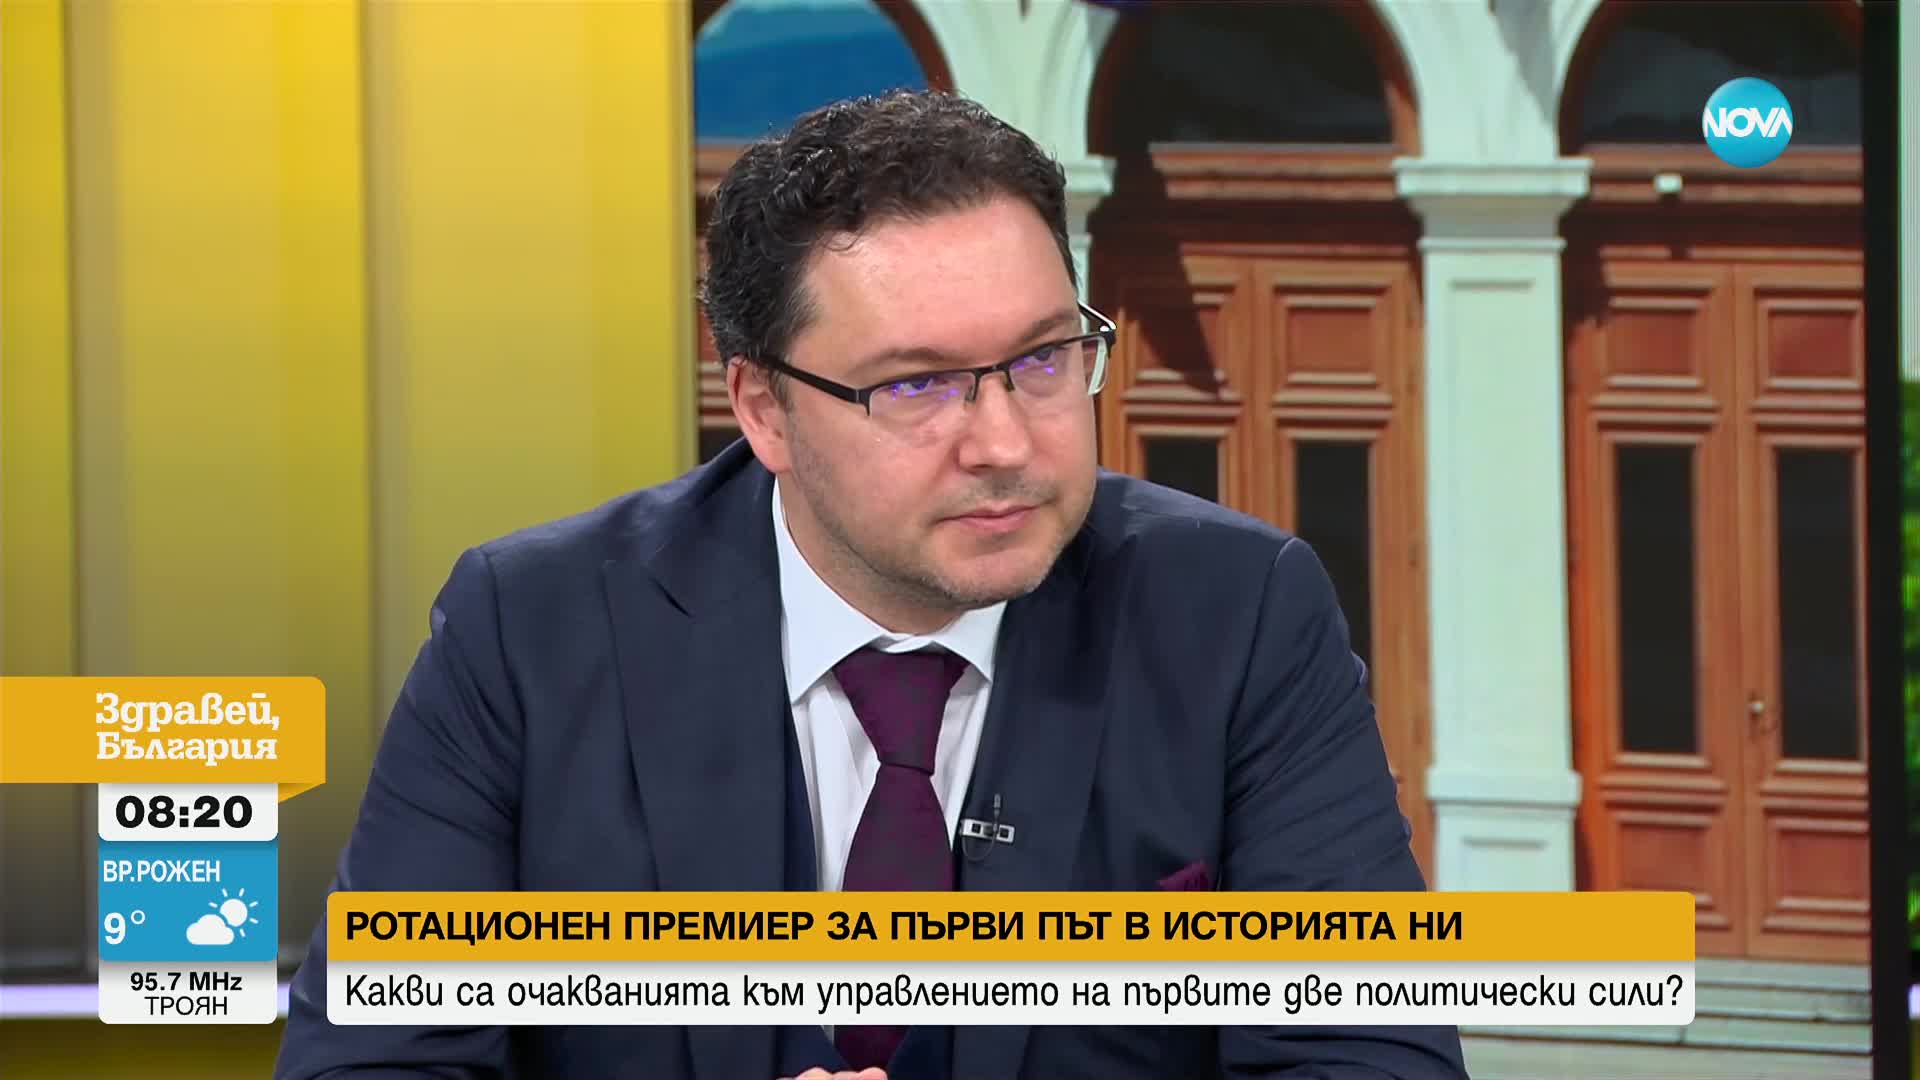 Даниел Митов: Без ДПС няма как да се случи нито съдебната, нито конституционната реформа